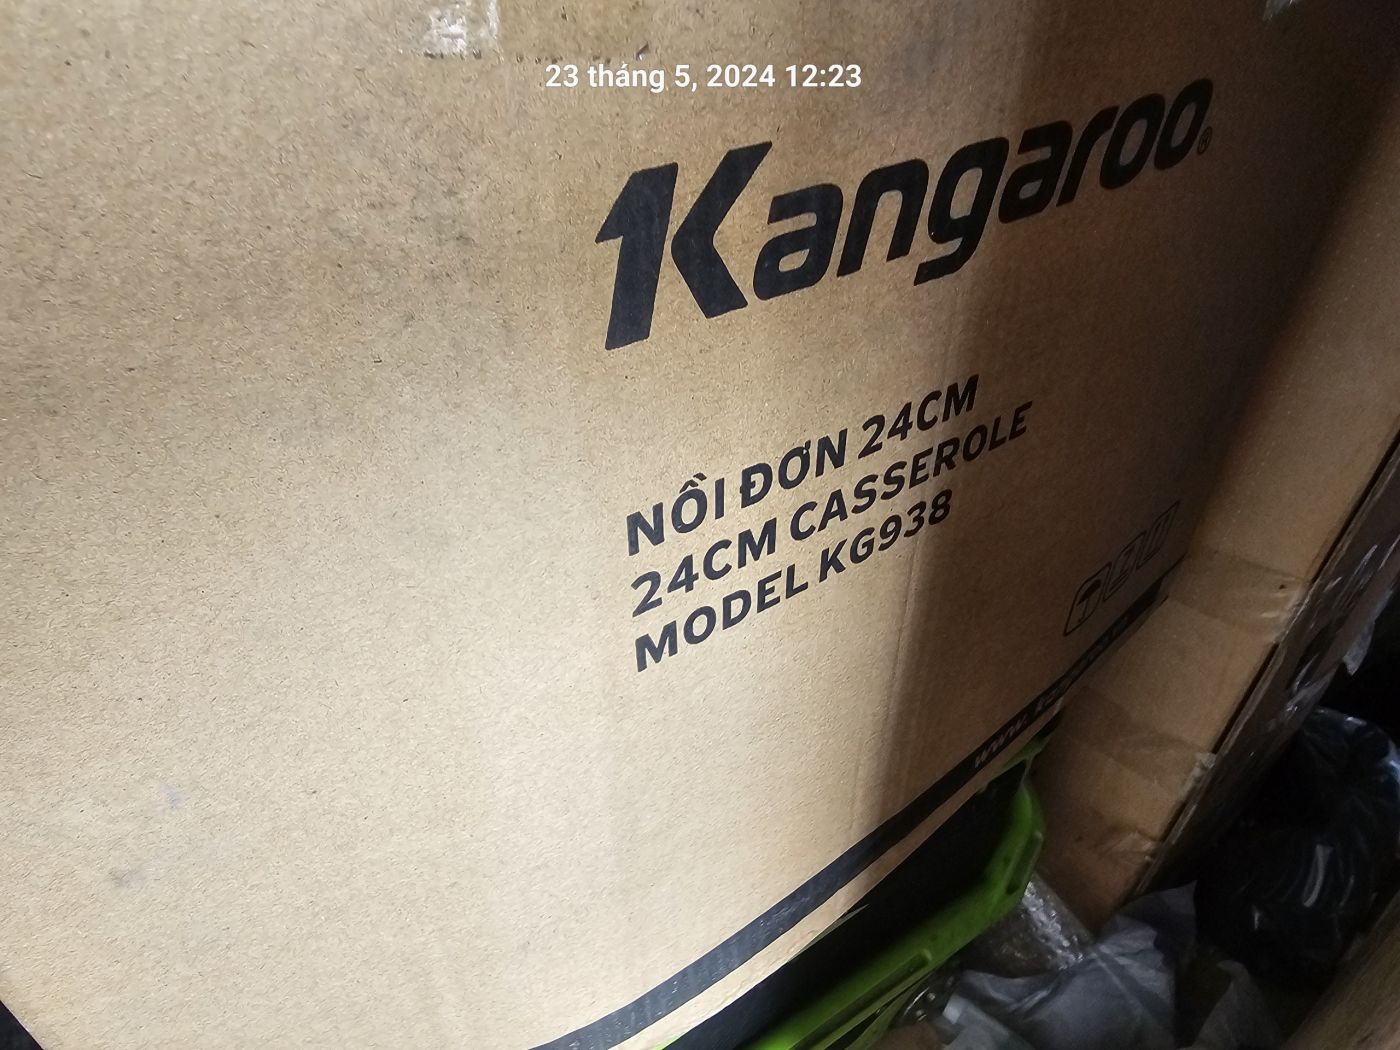 Nồi Hợp Kim Nhôm Đáy Từ Kangaroo KG 938 size 24 cm - Hàng Chính Hãng